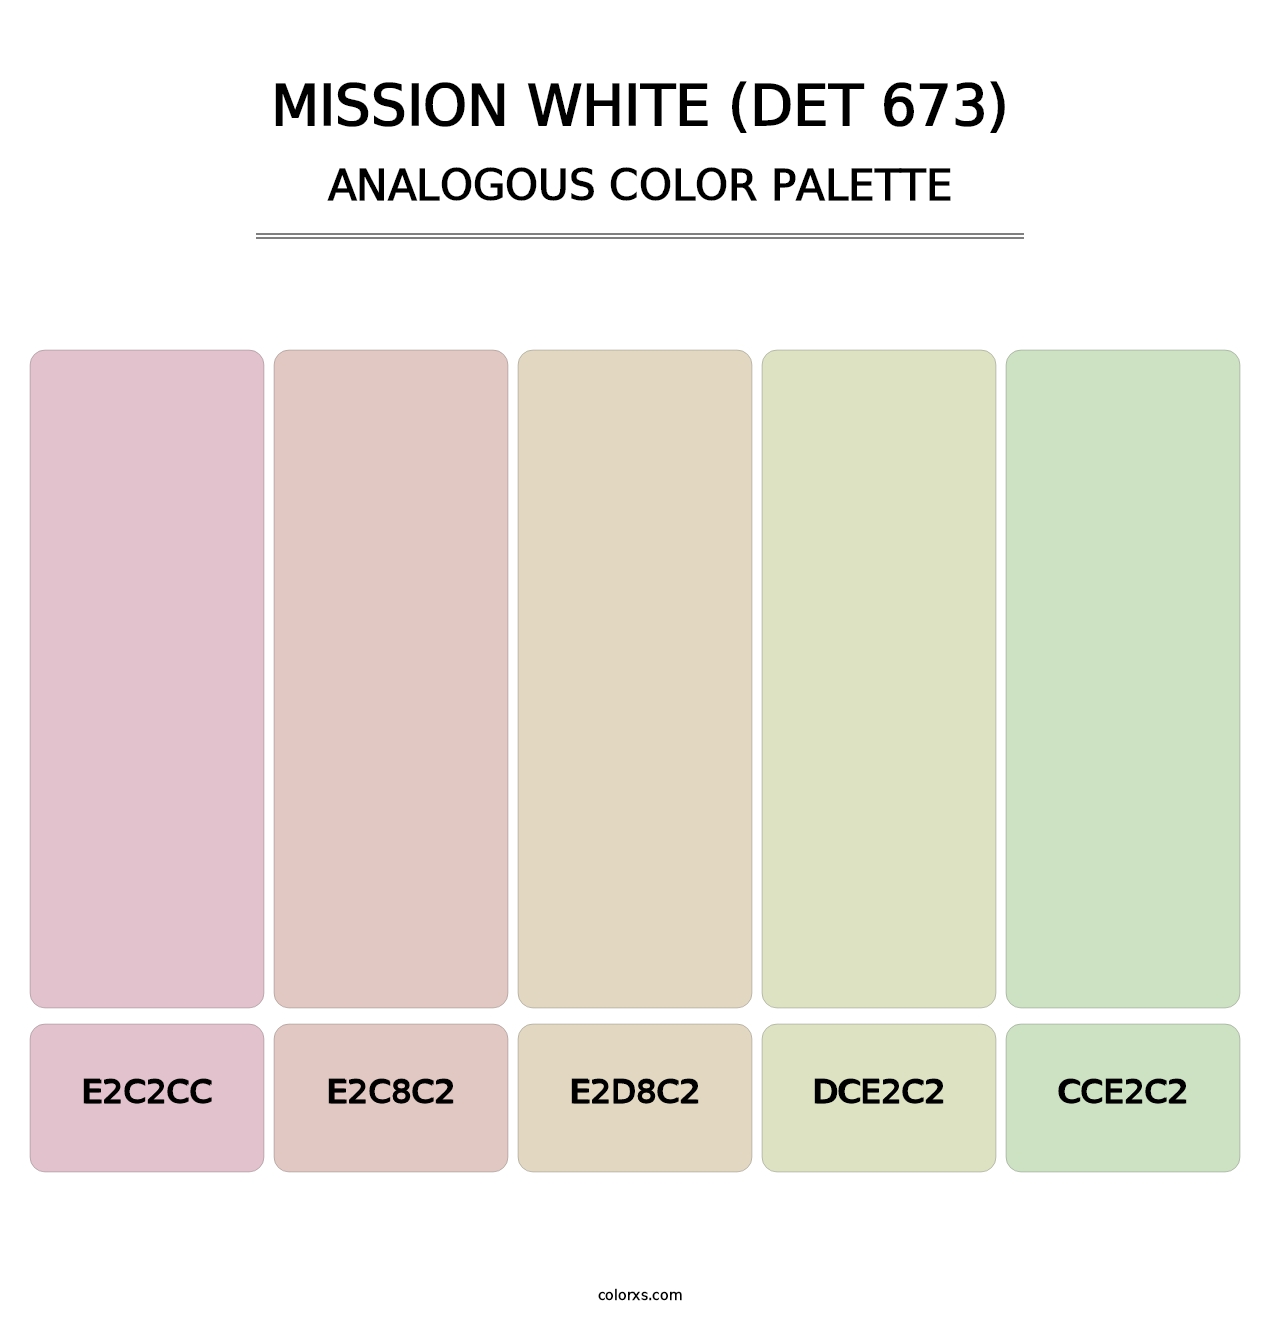 Mission White (DET 673) - Analogous Color Palette